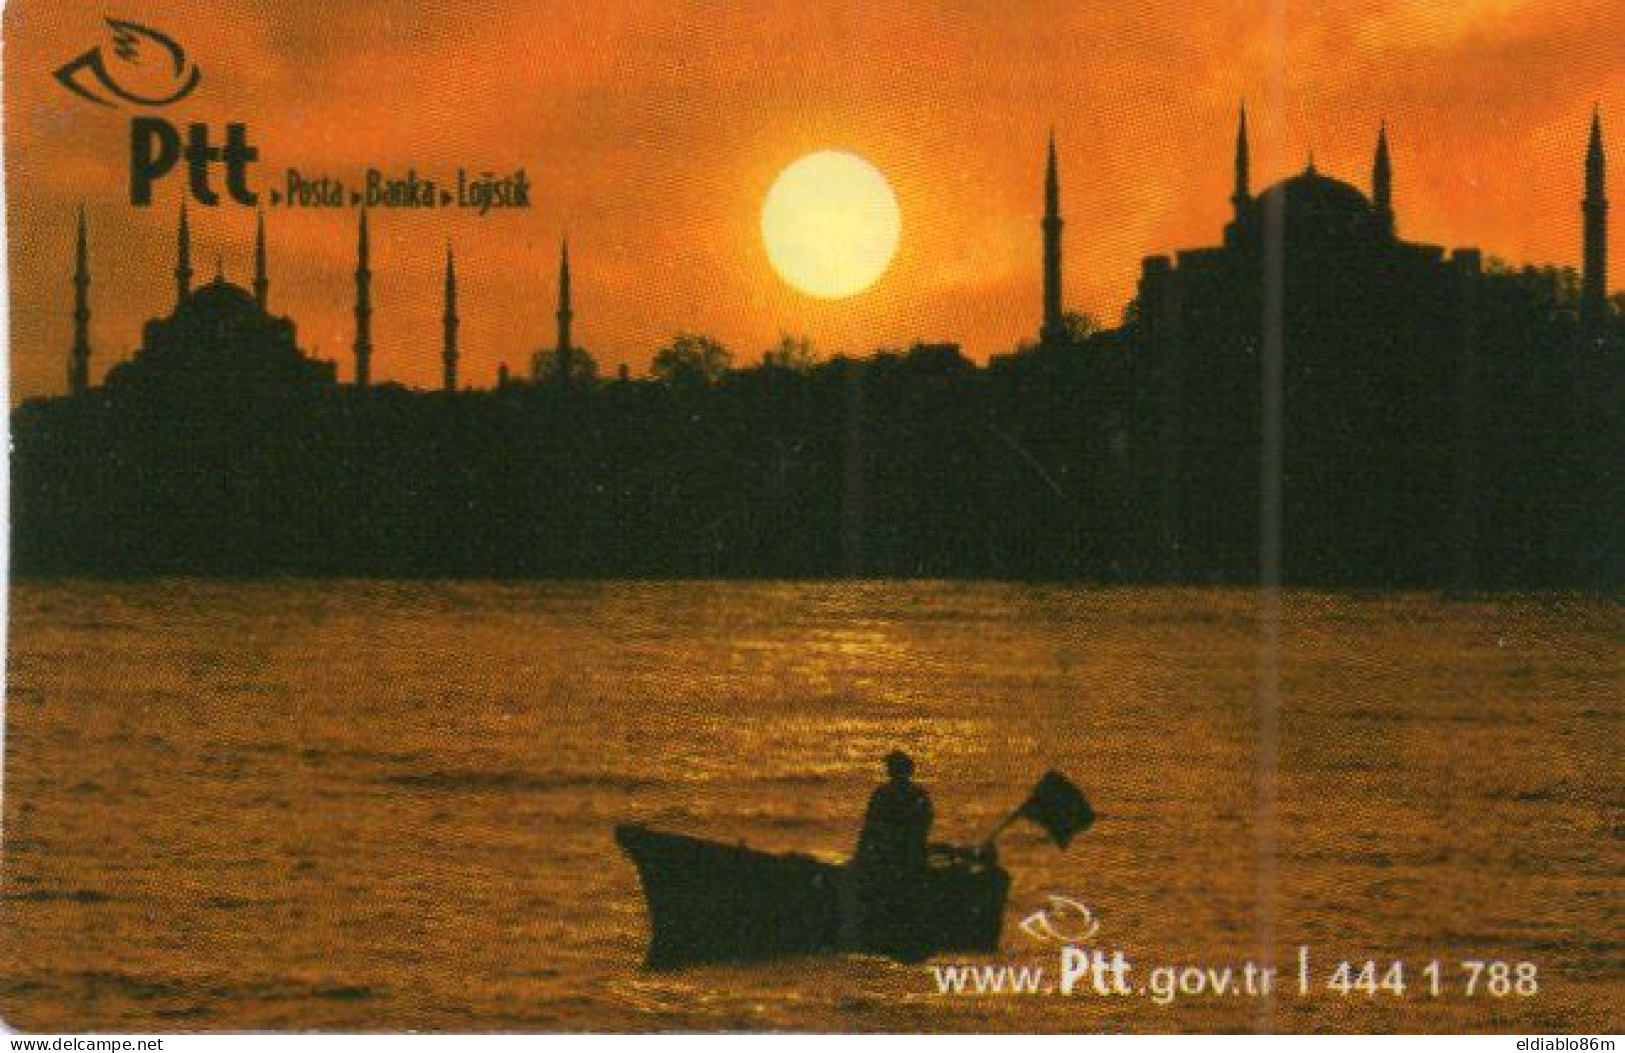 TURKEY - POCKET CALENDAR - PTT POST TURKEY - NOT PHONECARD - Turkey